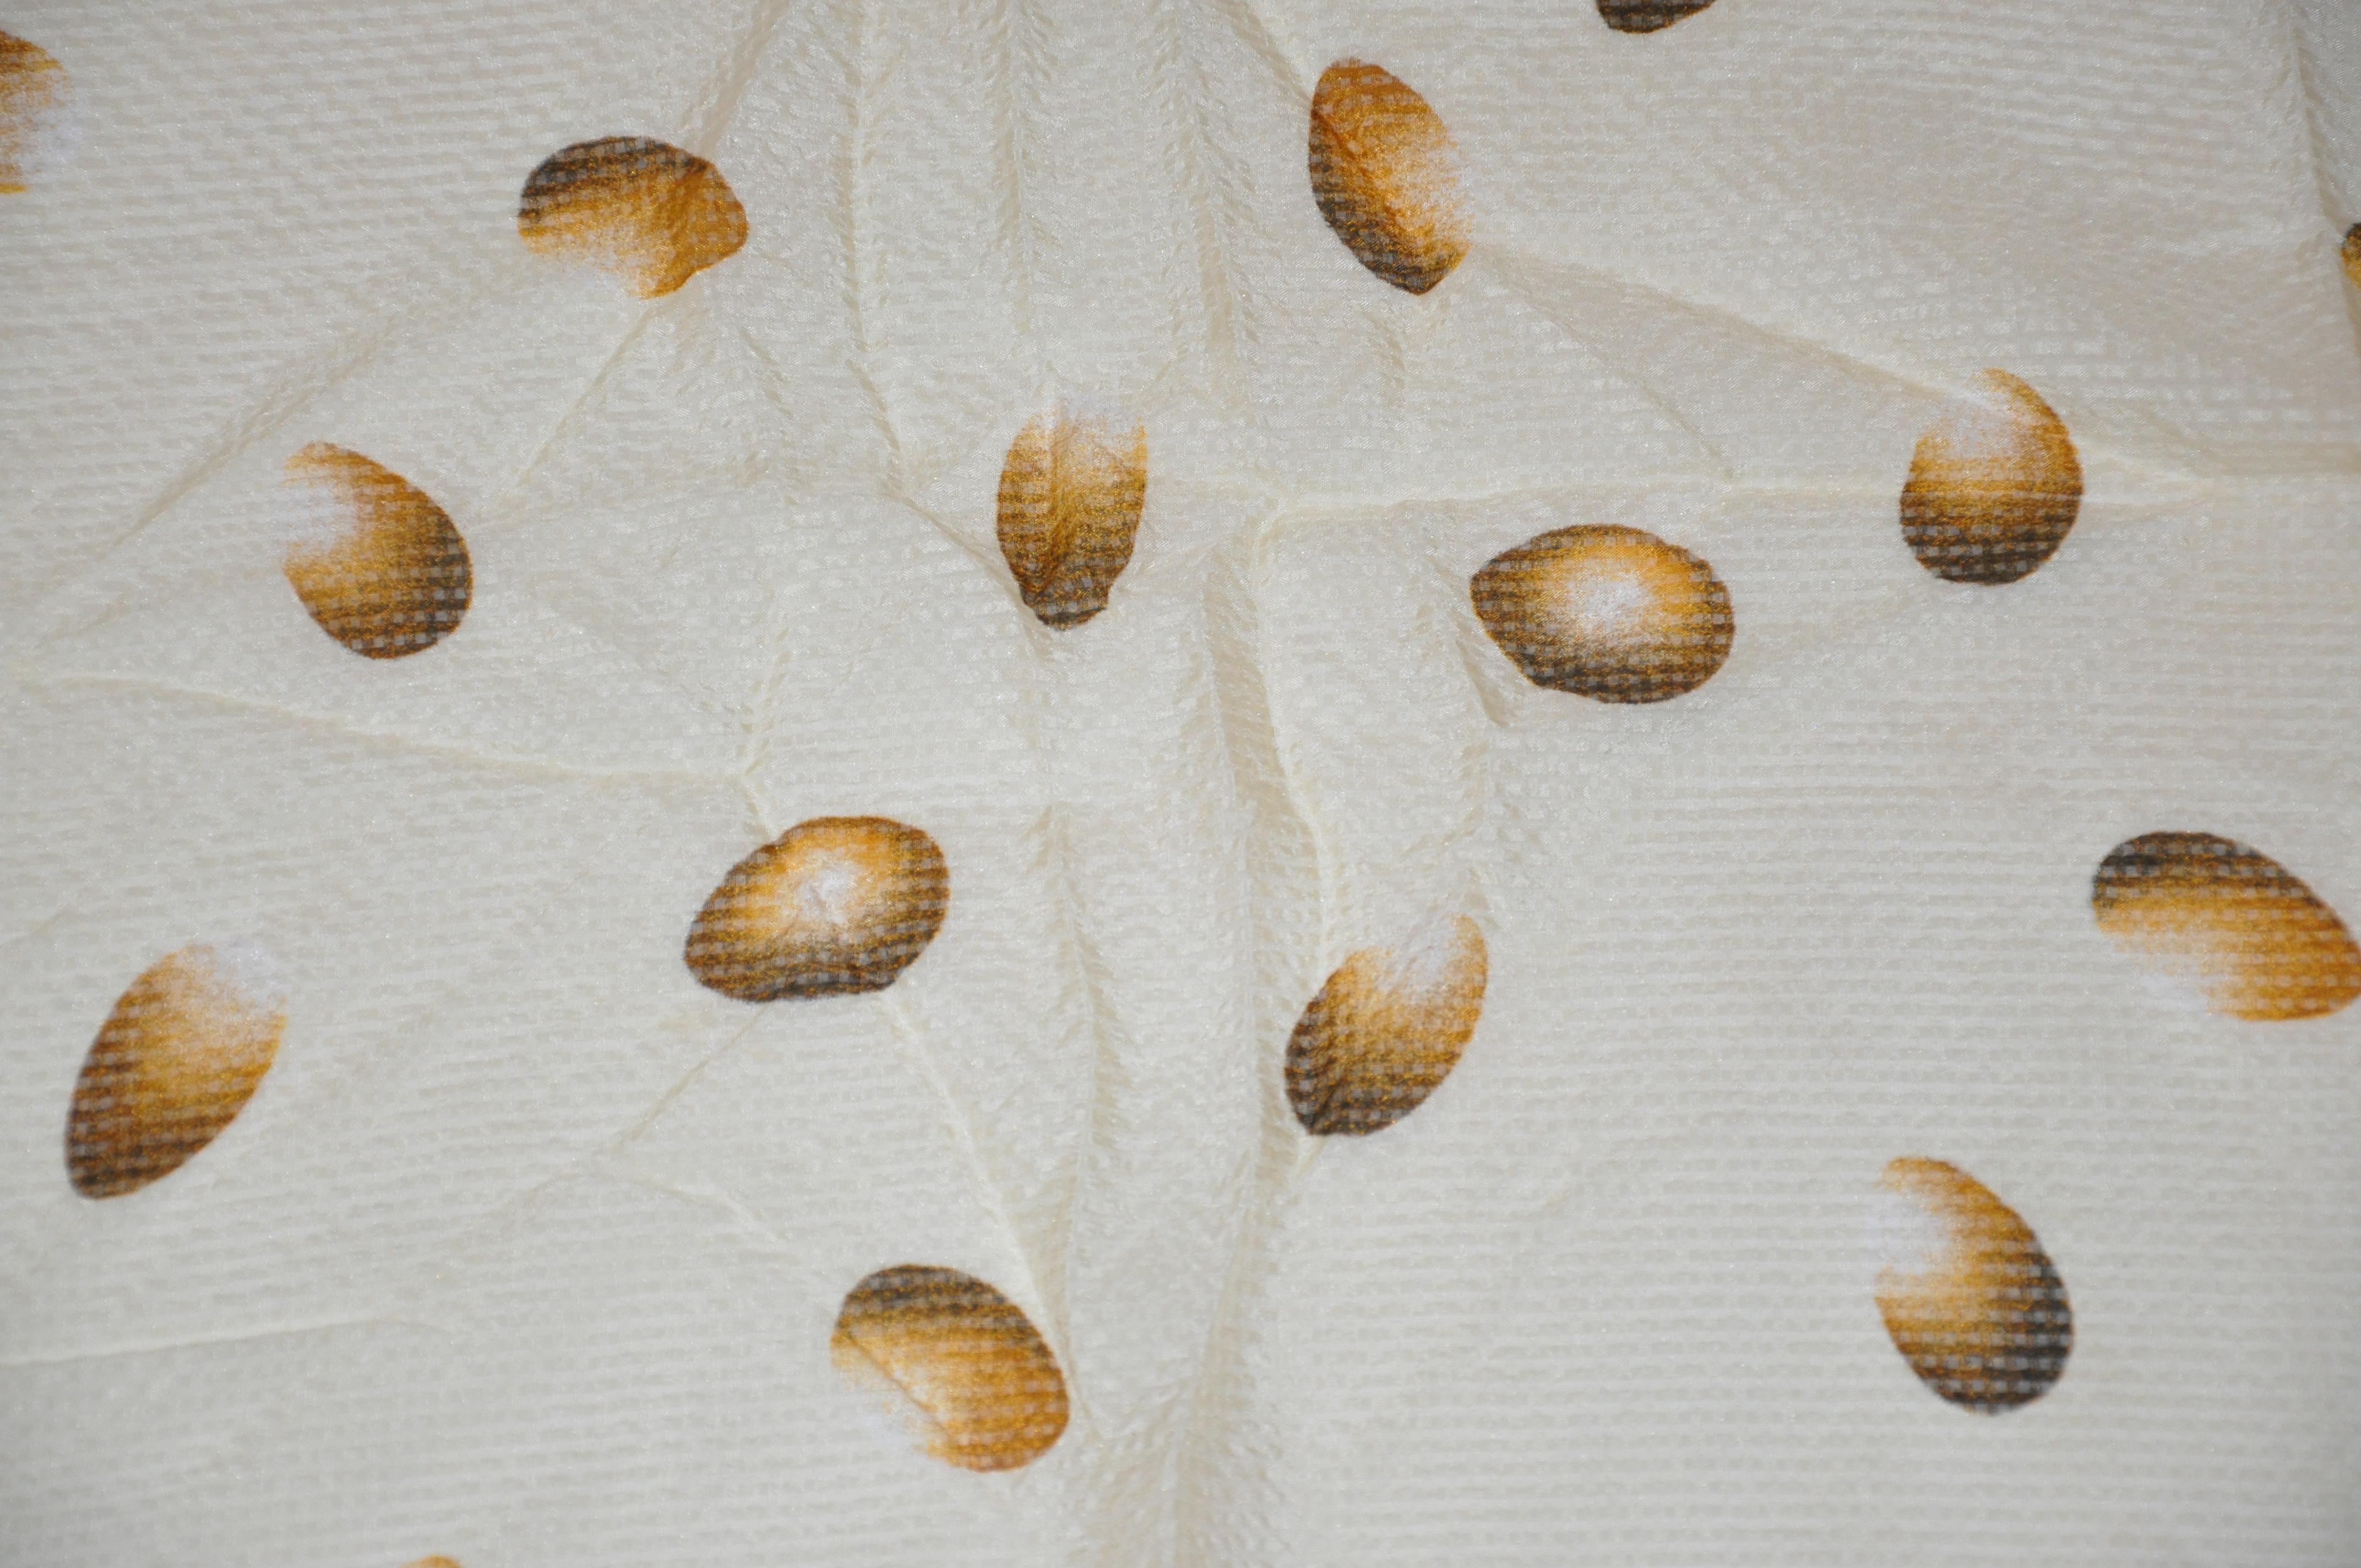      Perry Ellis merveilleuse combinaison de crème entourée d'une écharpe en mousseline de soie vert émeraude, mesure 30 pouces par 31 pouces. Bords roulés et fabriqué au Japon.